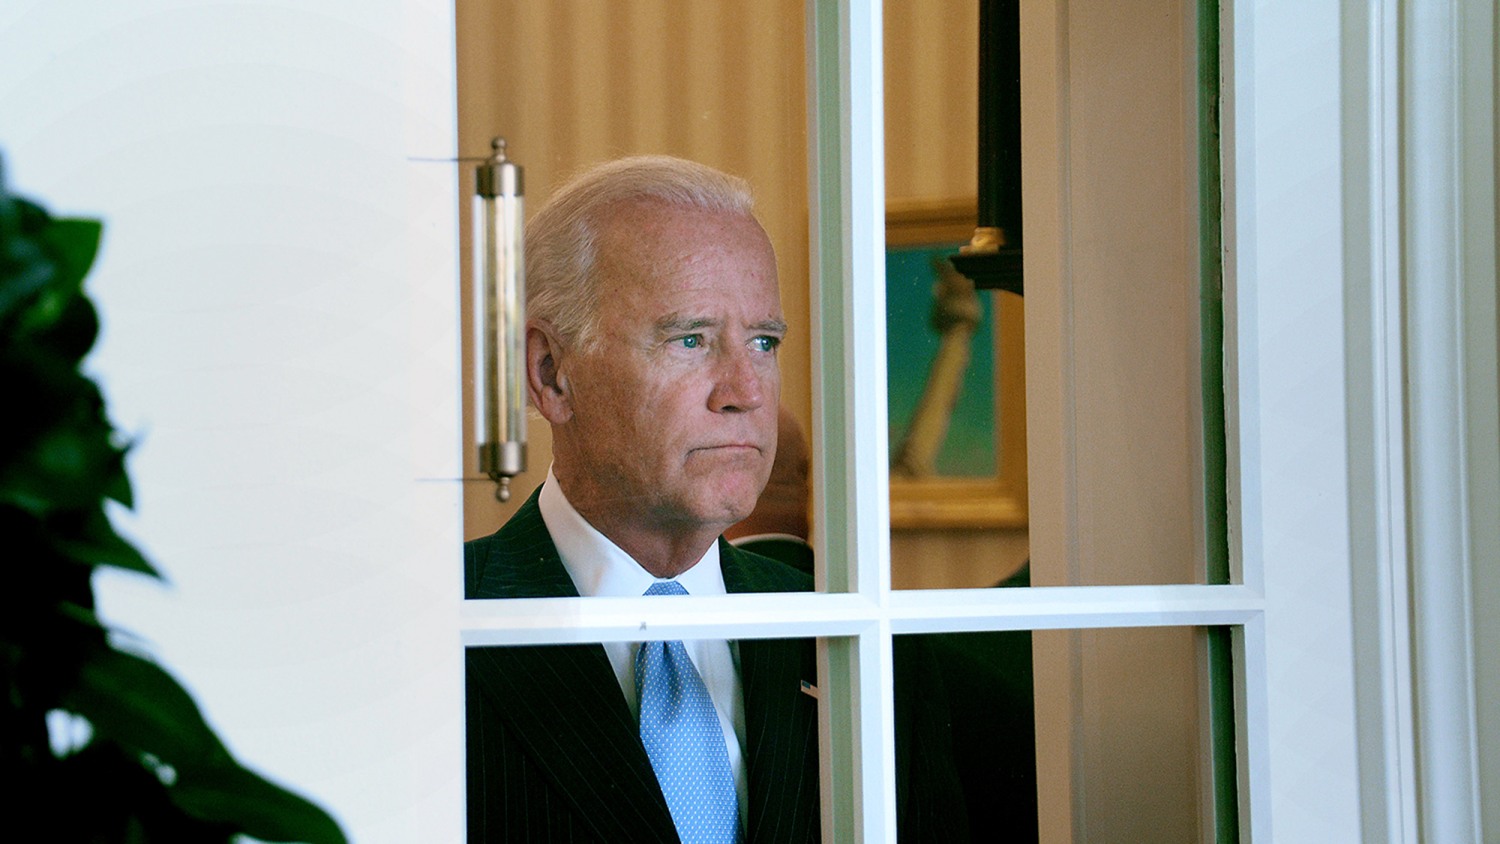 Tổng thống Mỹ Biden cùng nhiều quan chức cấp cao bị Nga áp lệnh trừng phạt (ảnh: CNN)